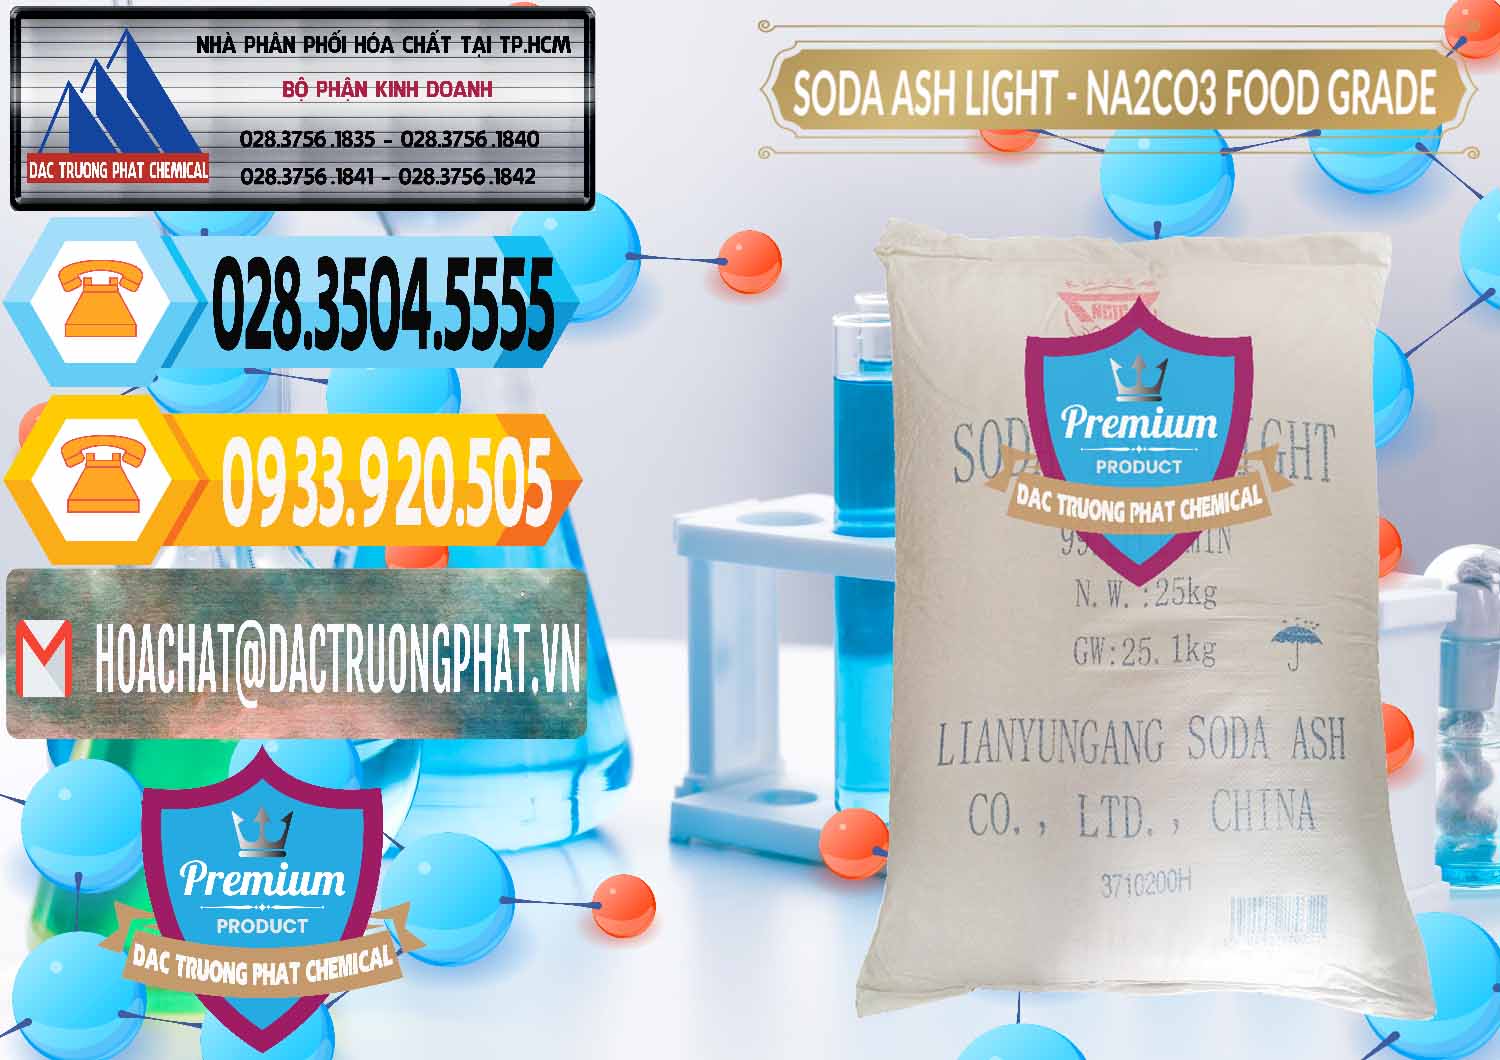 Nơi cung ứng & bán Soda Ash Light – NA2CO3 Food Grade Trung Quốc China - 0127 - Kinh doanh _ phân phối hóa chất tại TP.HCM - hoachattayrua.net